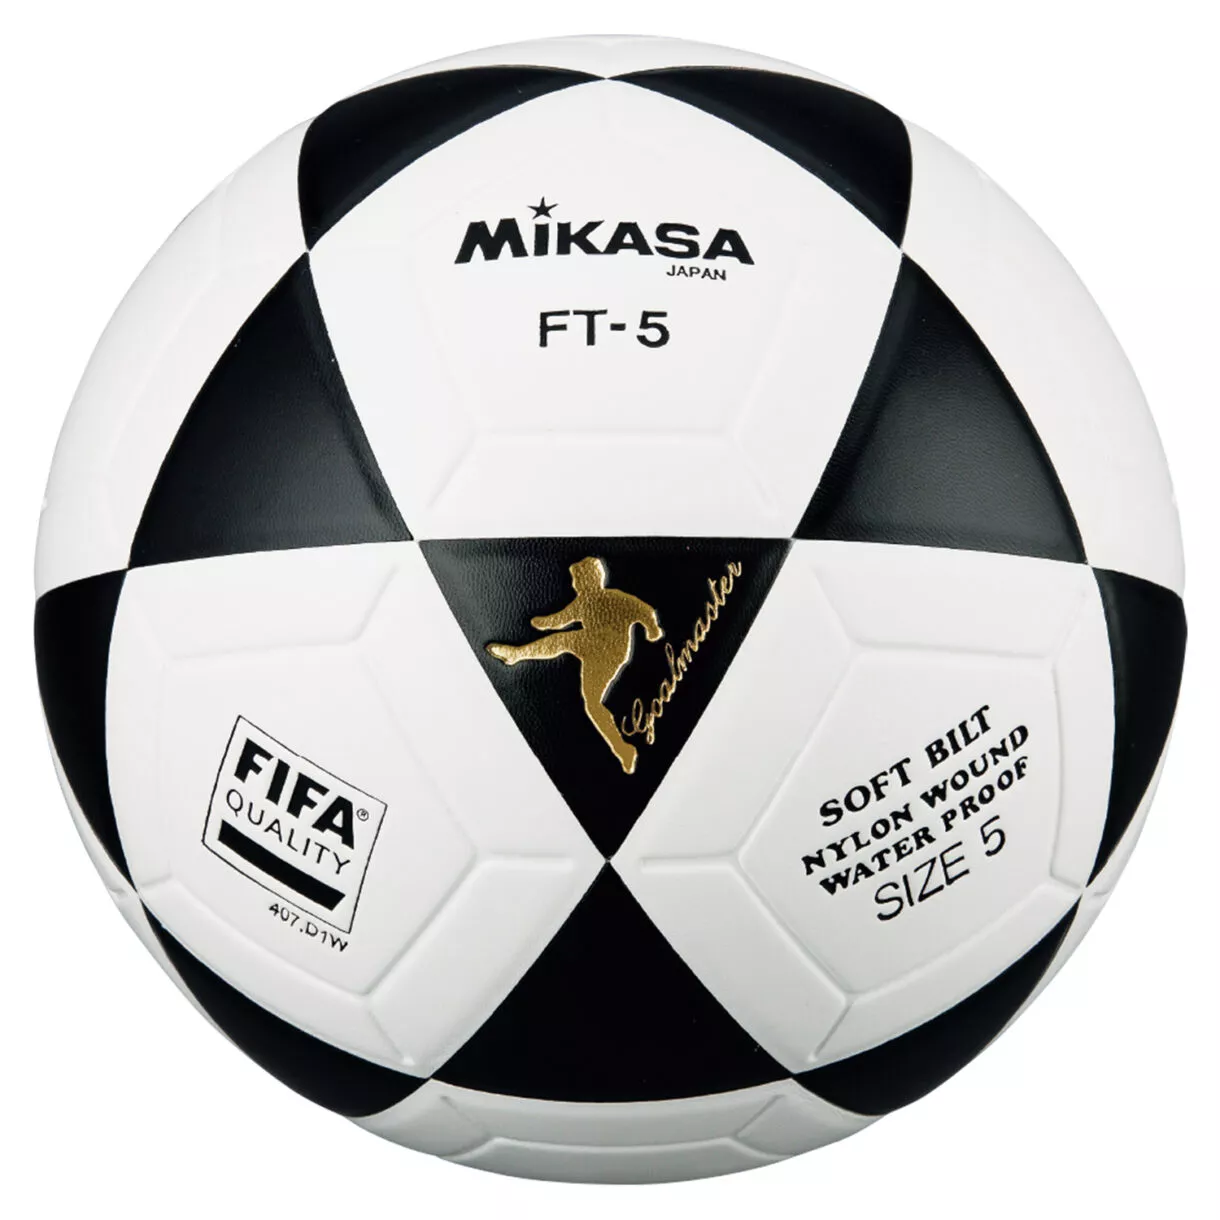 Balones de fútbol profesional, semiprofesional y para entrenamiento